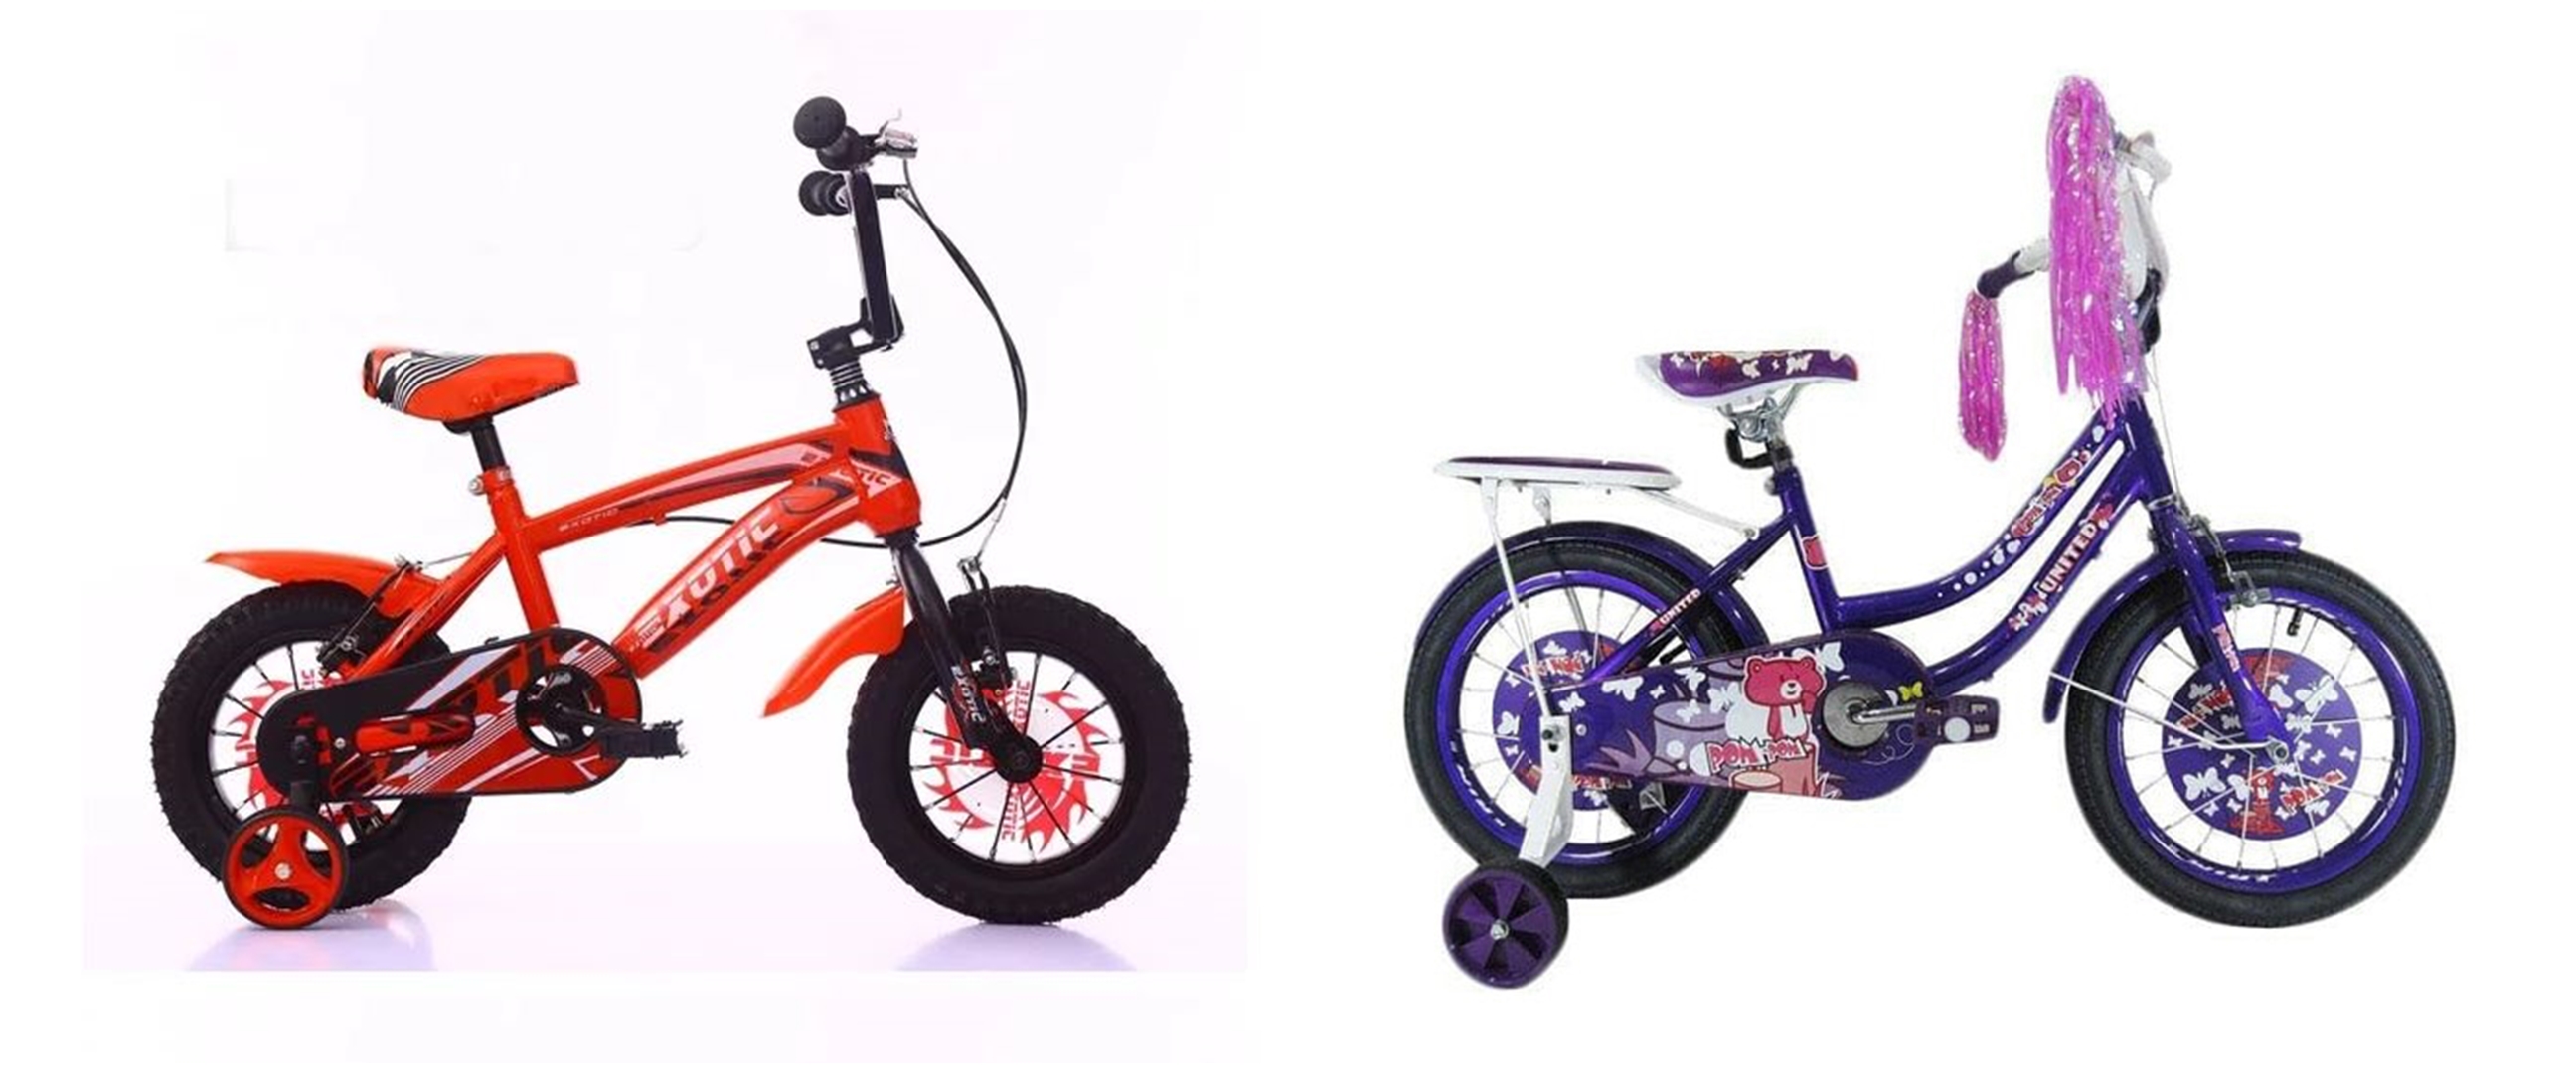 Daftar harga  sepeda  anak berbagai merk di bawah  Rp 1  5 juta 